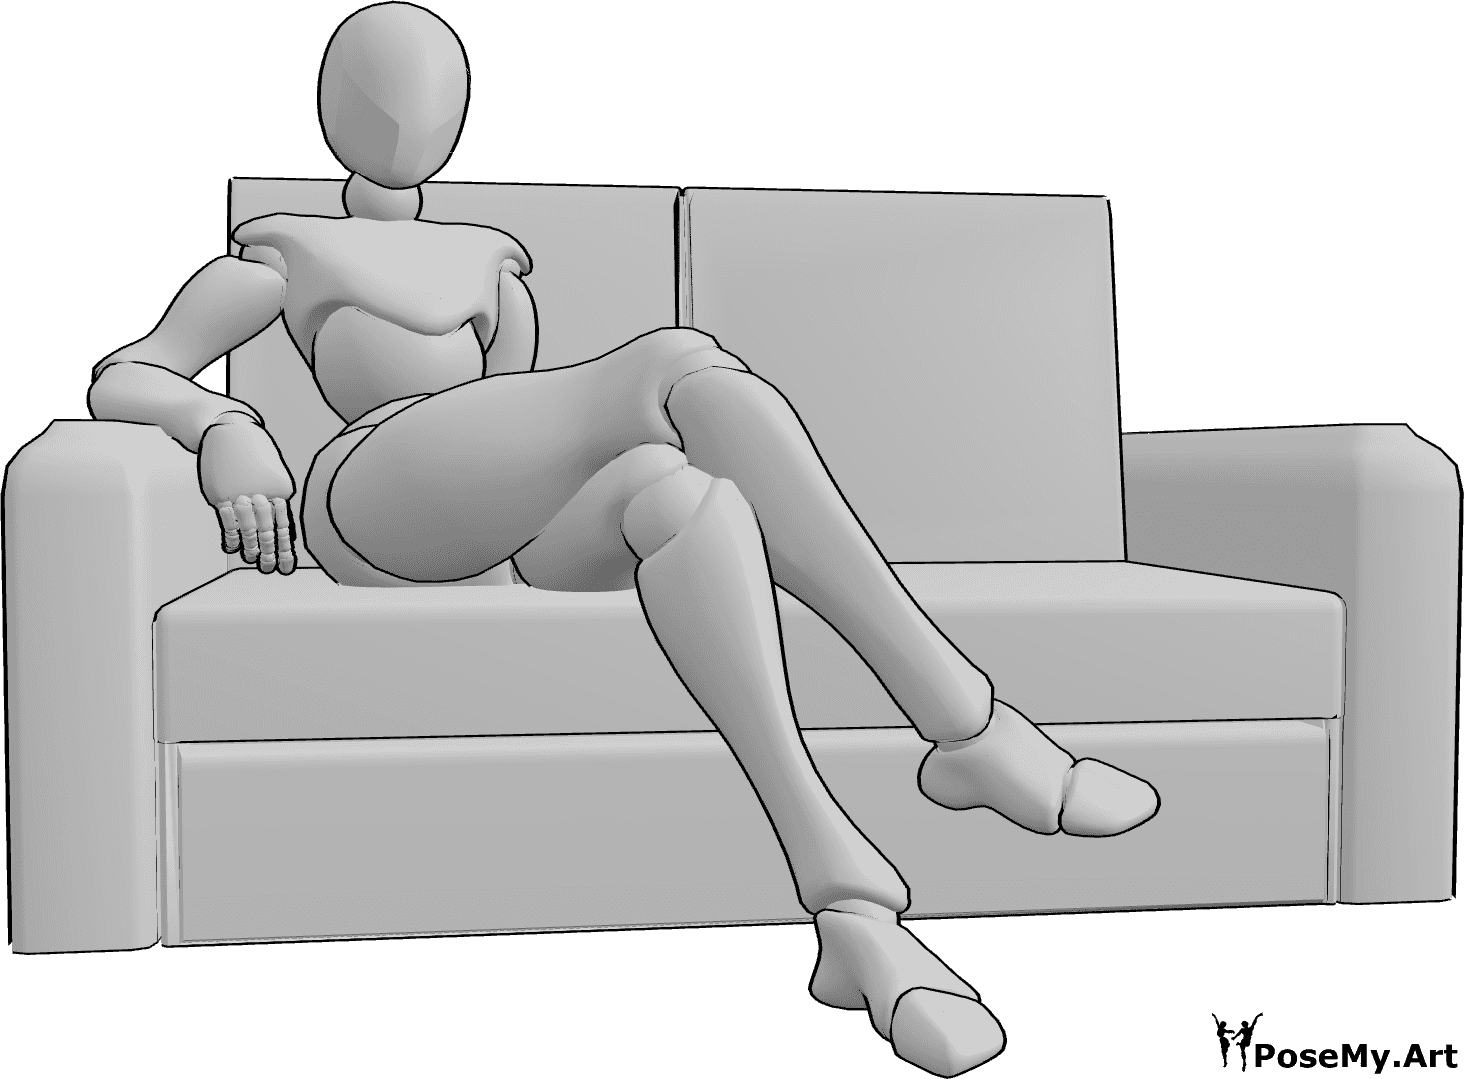 Referencia de poses- Cómoda postura sentada en el sofá - La mujer está cómodamente sentada en el sofá con las piernas cruzadas.